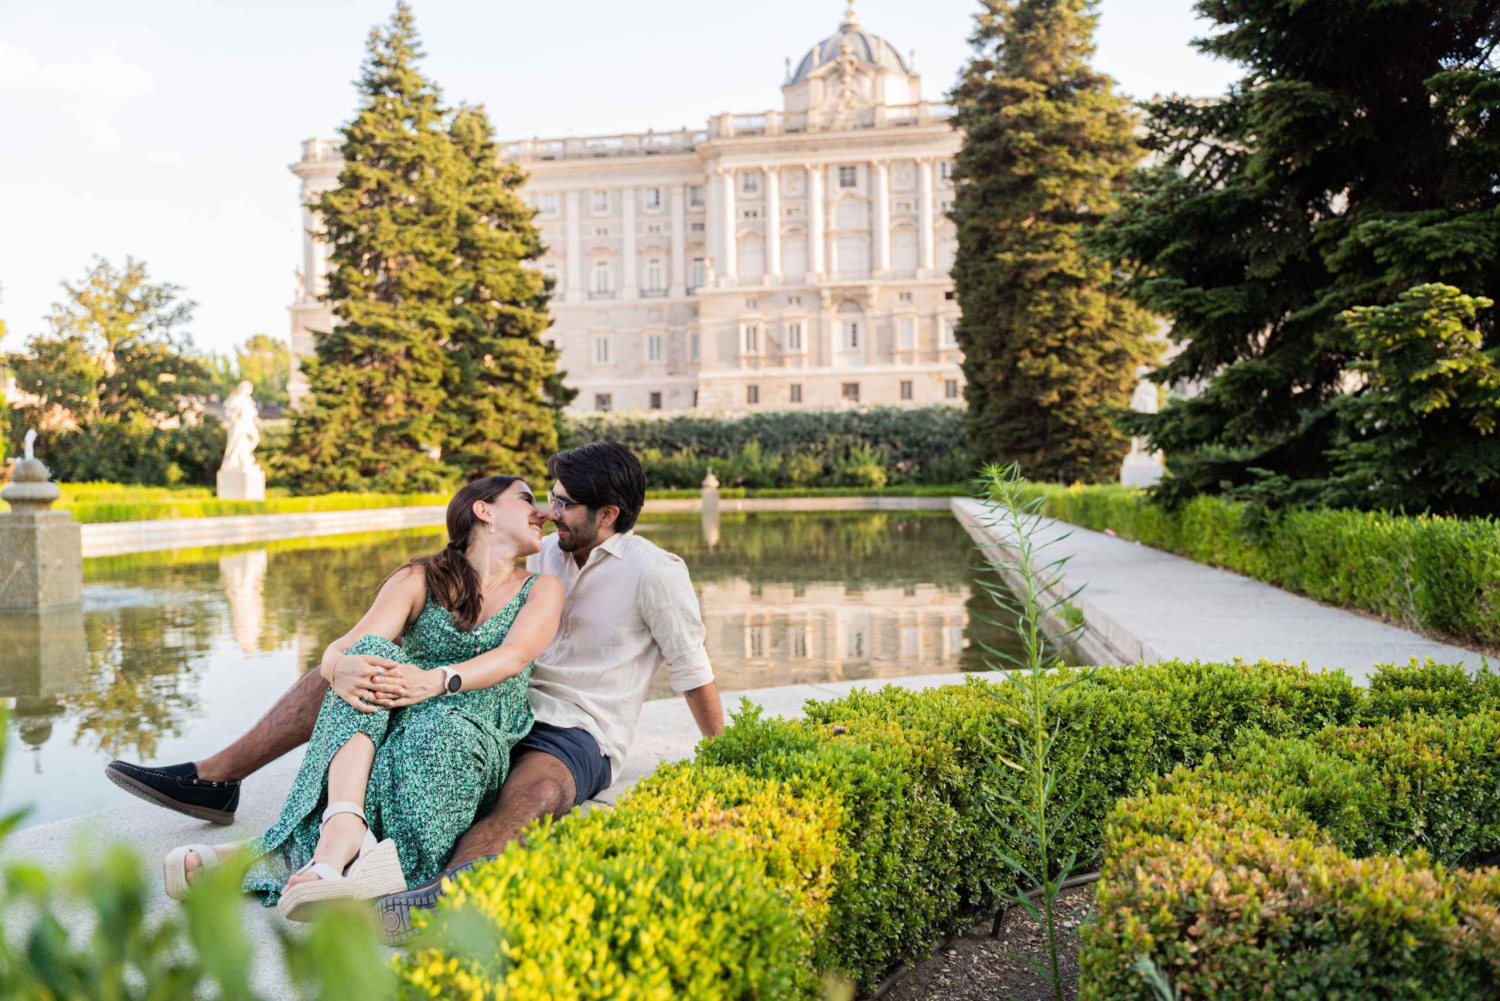 Madrid: Royal palace professional photoshoot